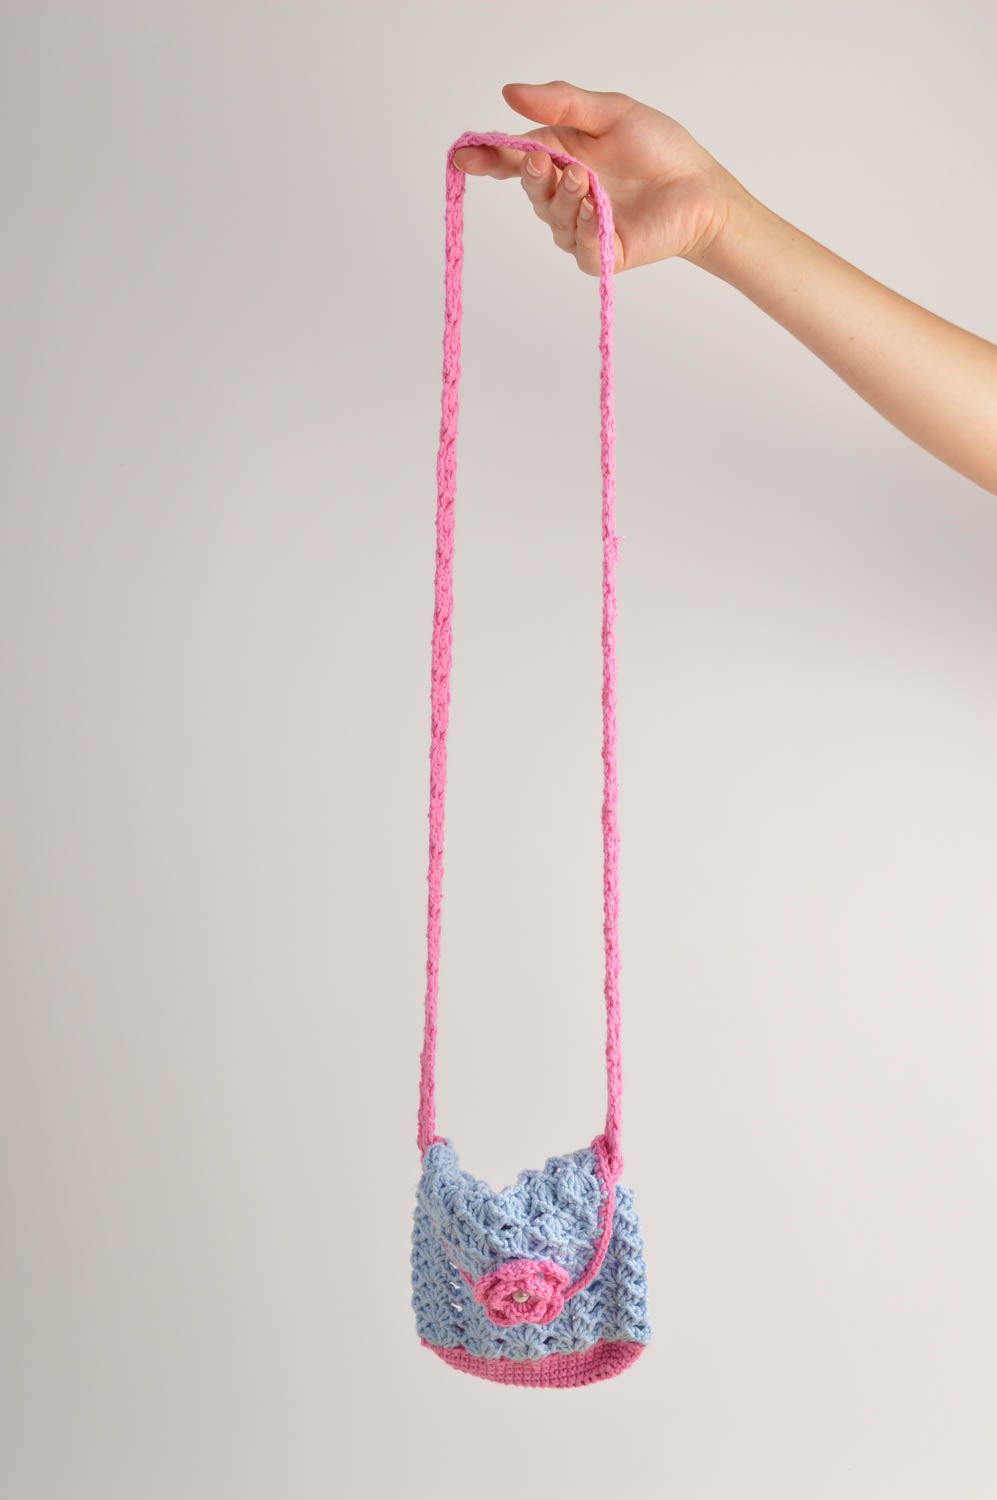 Сумка ручной работы сумка крючком красивая сумка для детей авторская для девочки фото 2